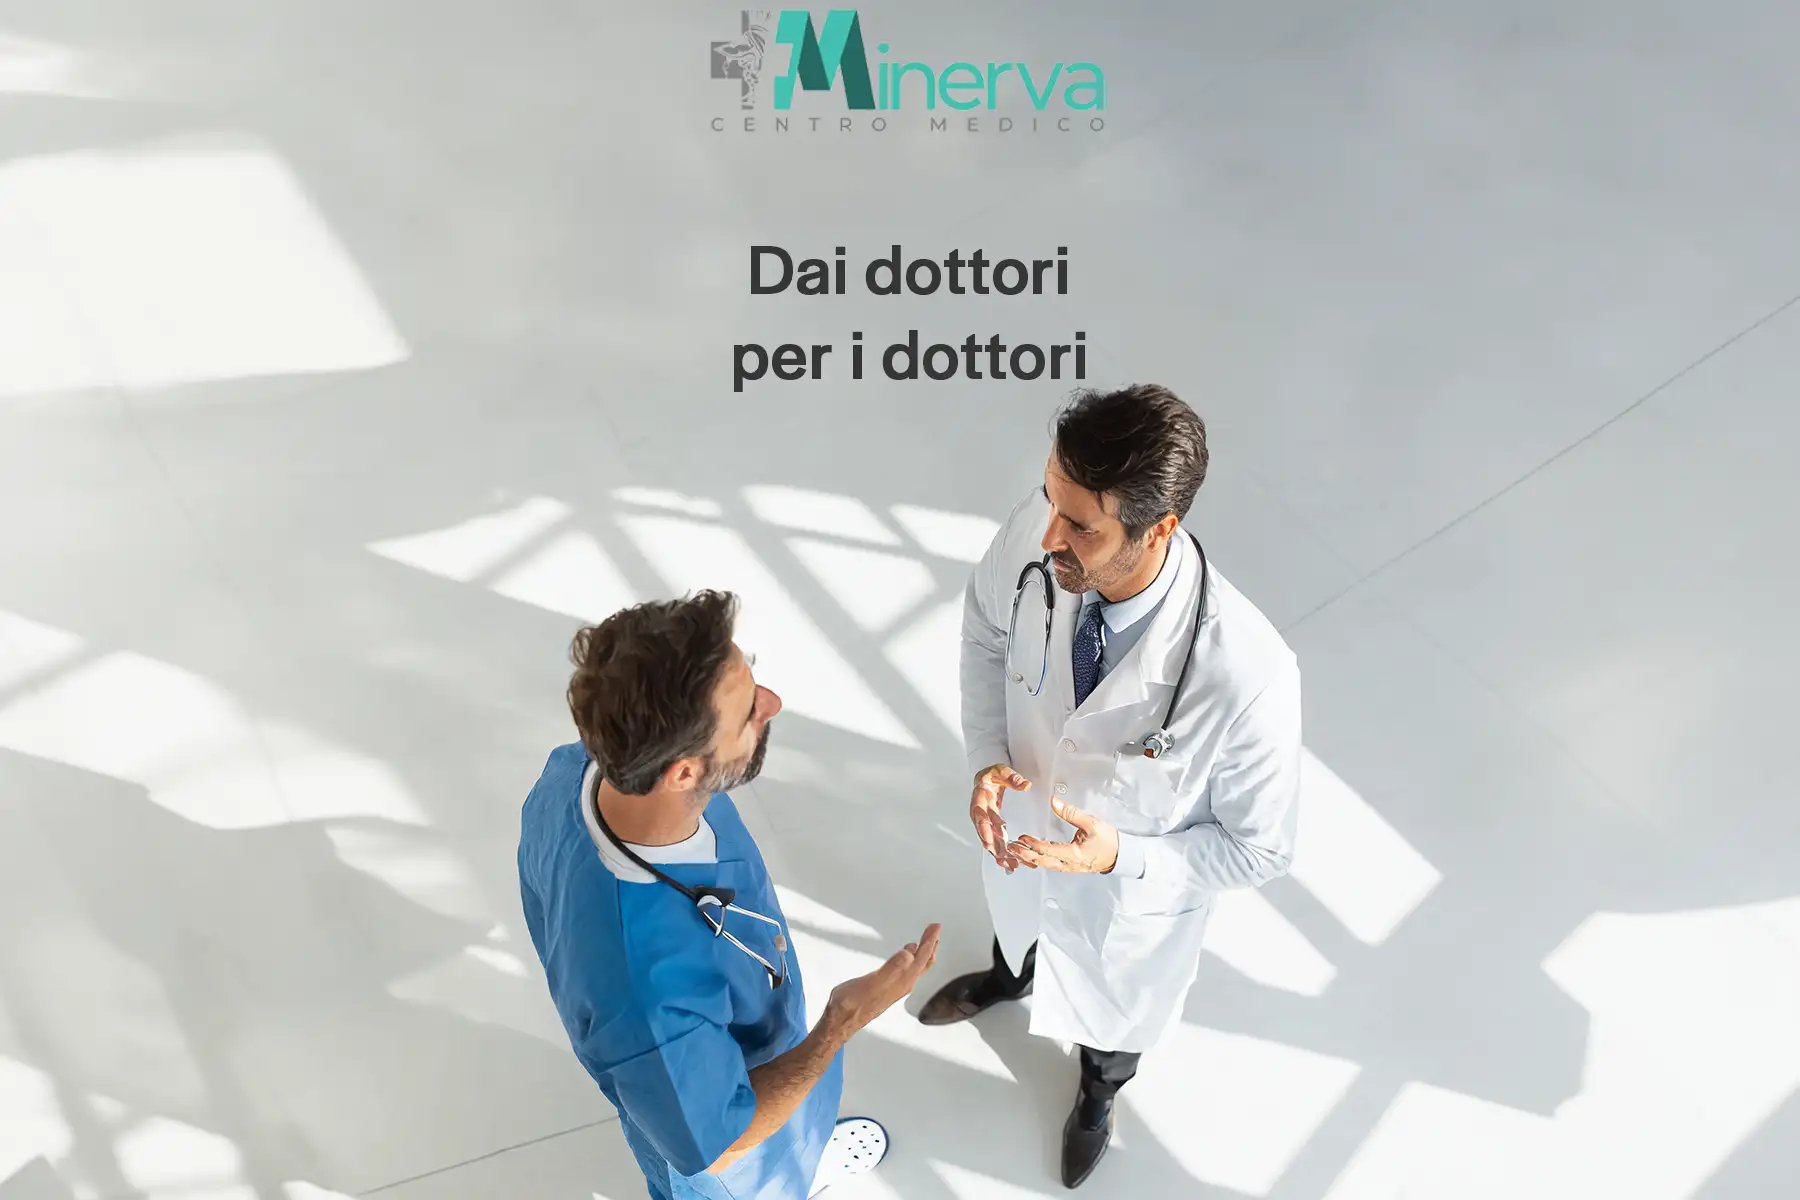 Minerva Sala Chirurgica Dottori